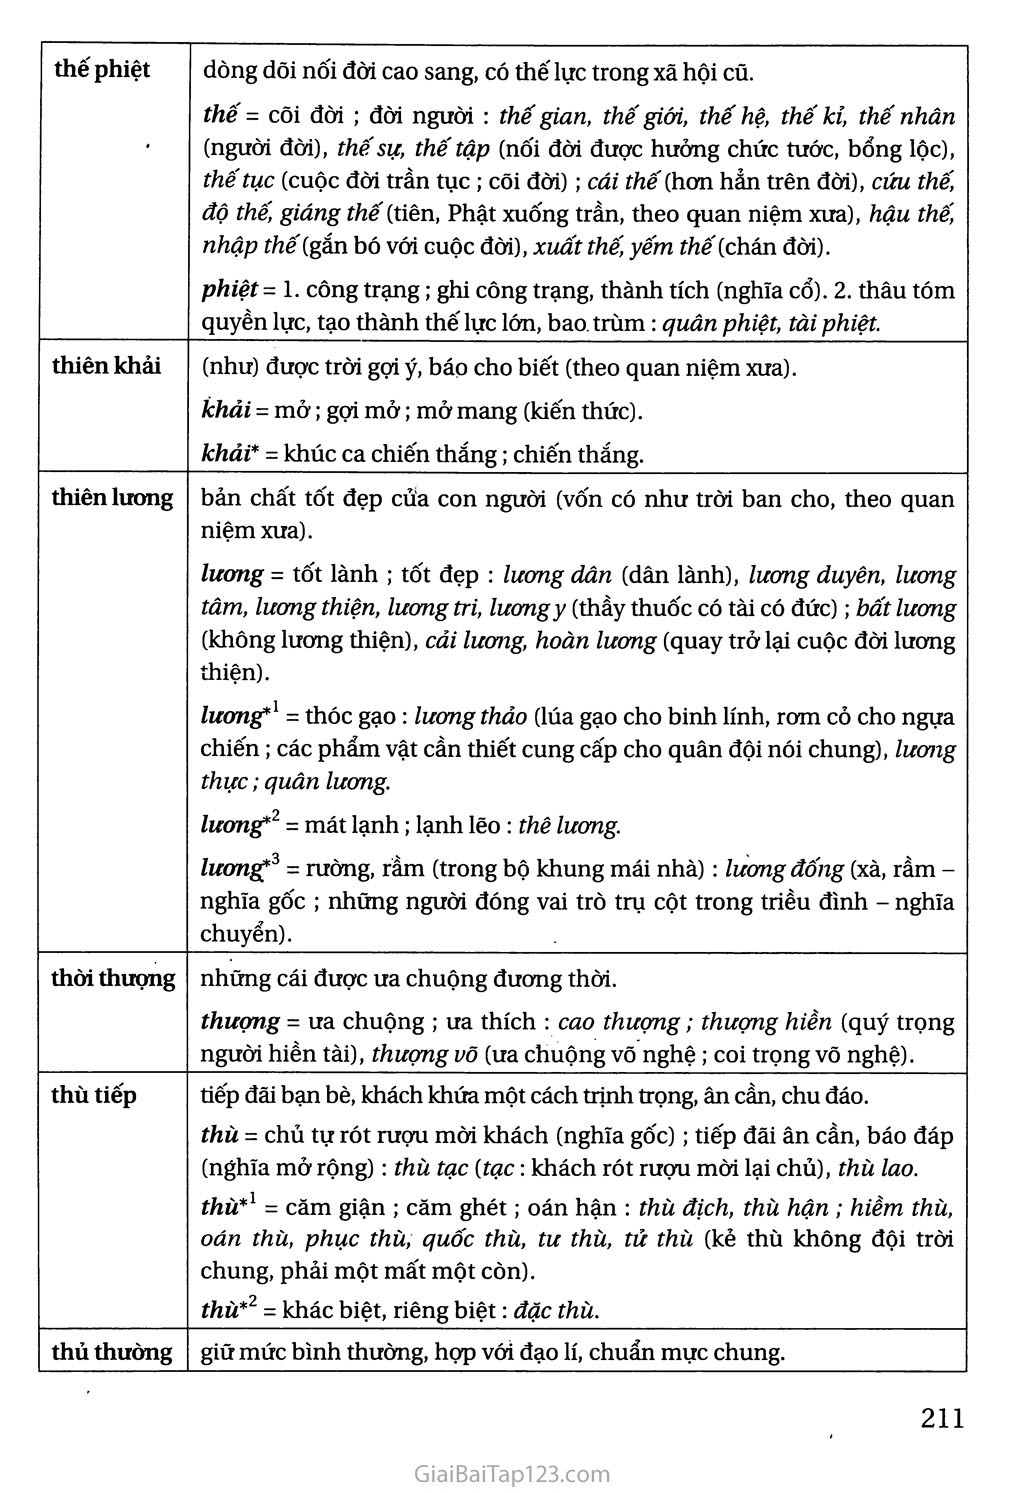 Bảng tra cứu từ Hán Việt trang 6